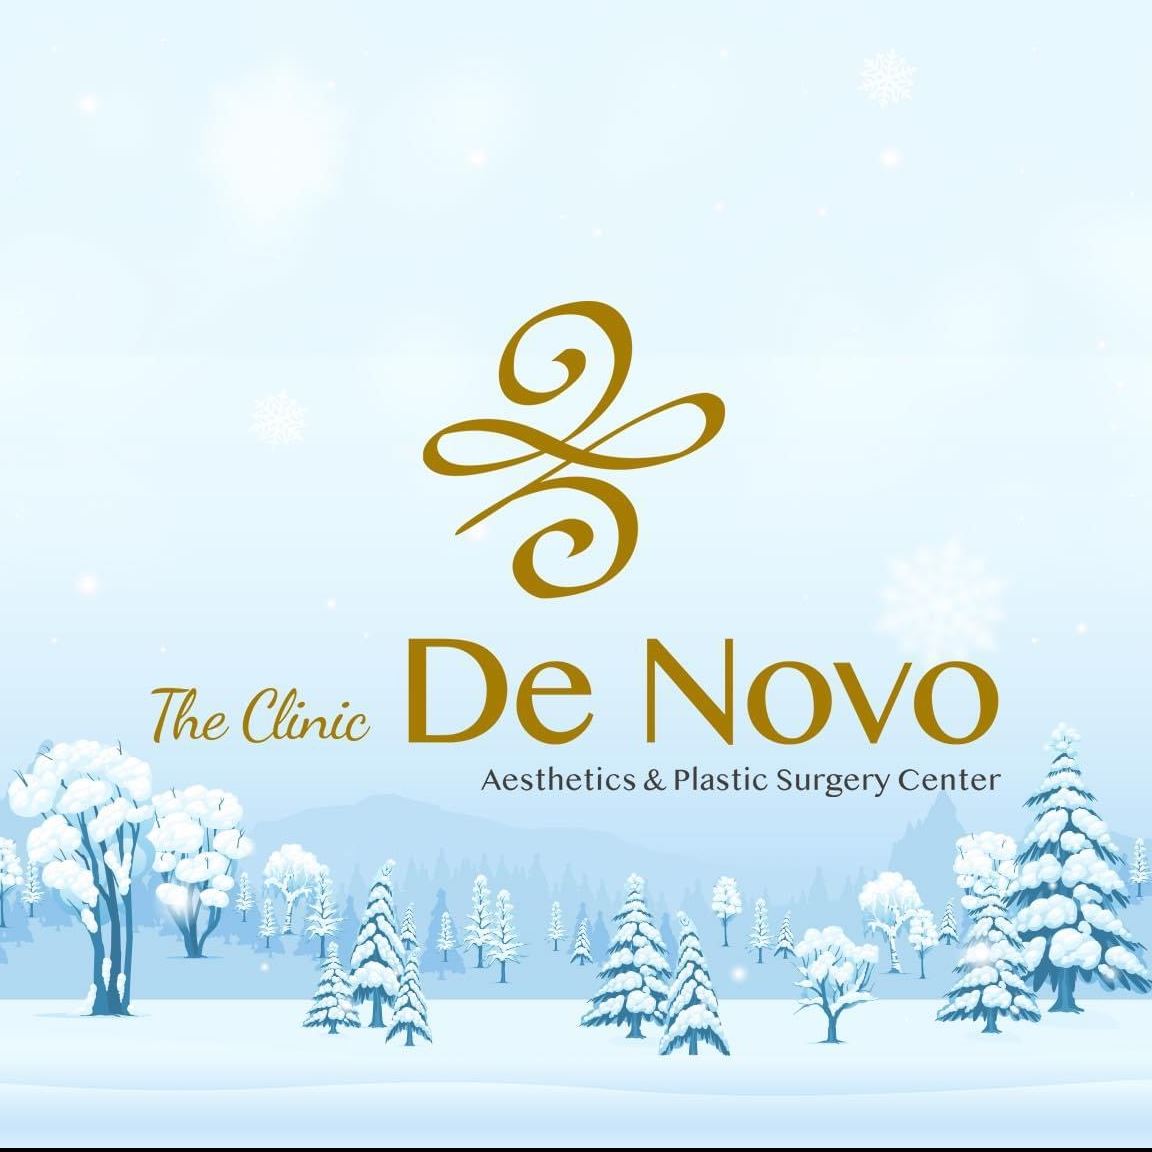 The Clinic De Novo